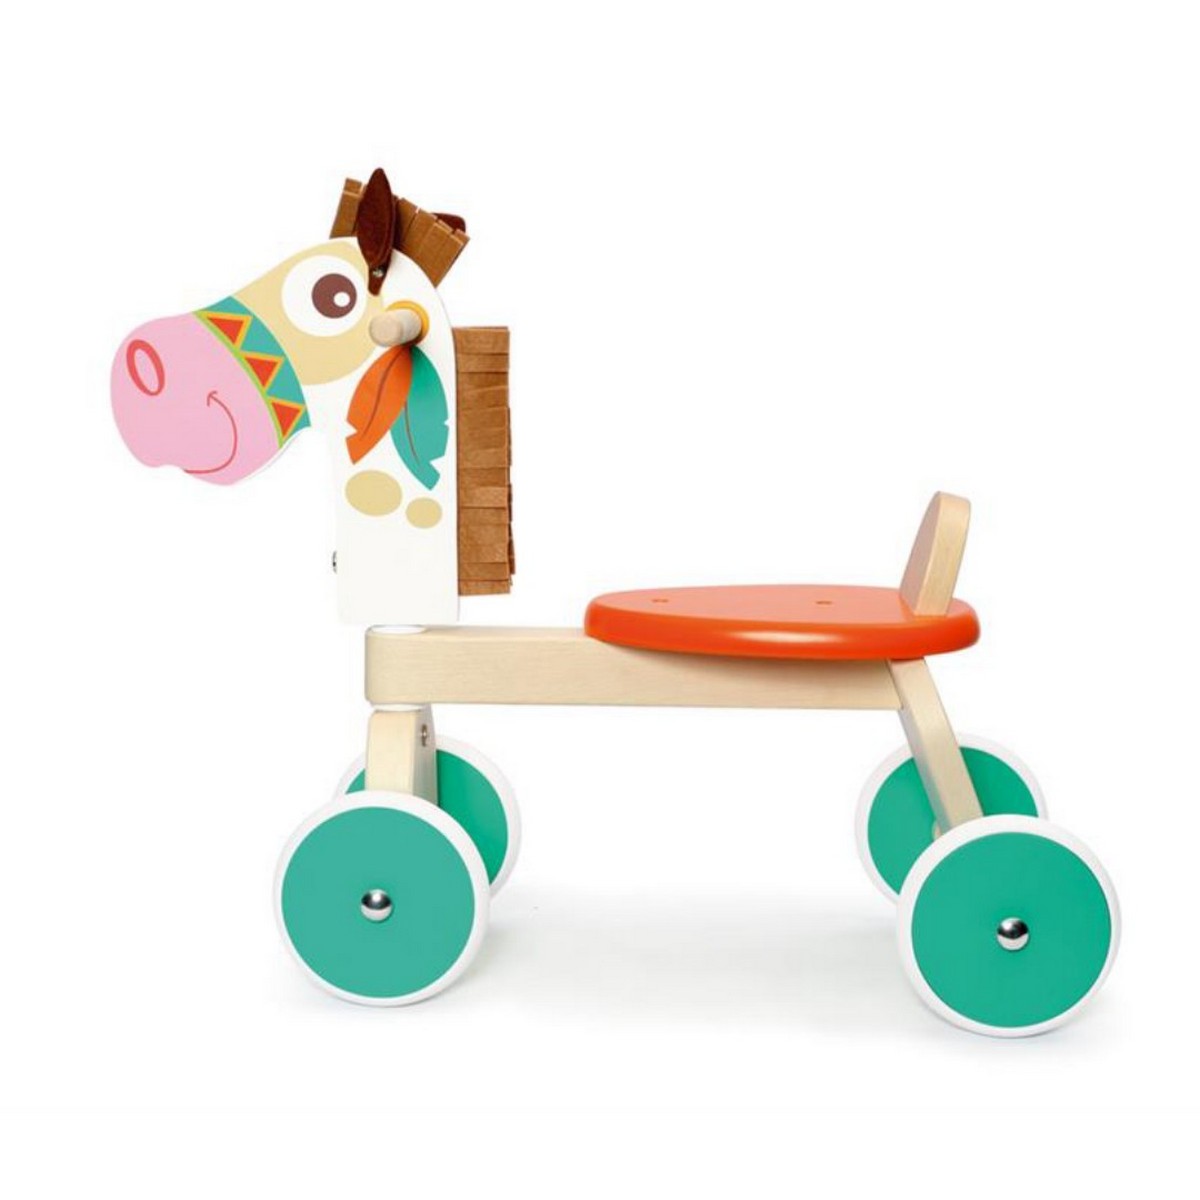 Dam scratch trotteur poney indien cheval en bois un jeu une idee cadeau chez ugo et lea (4)